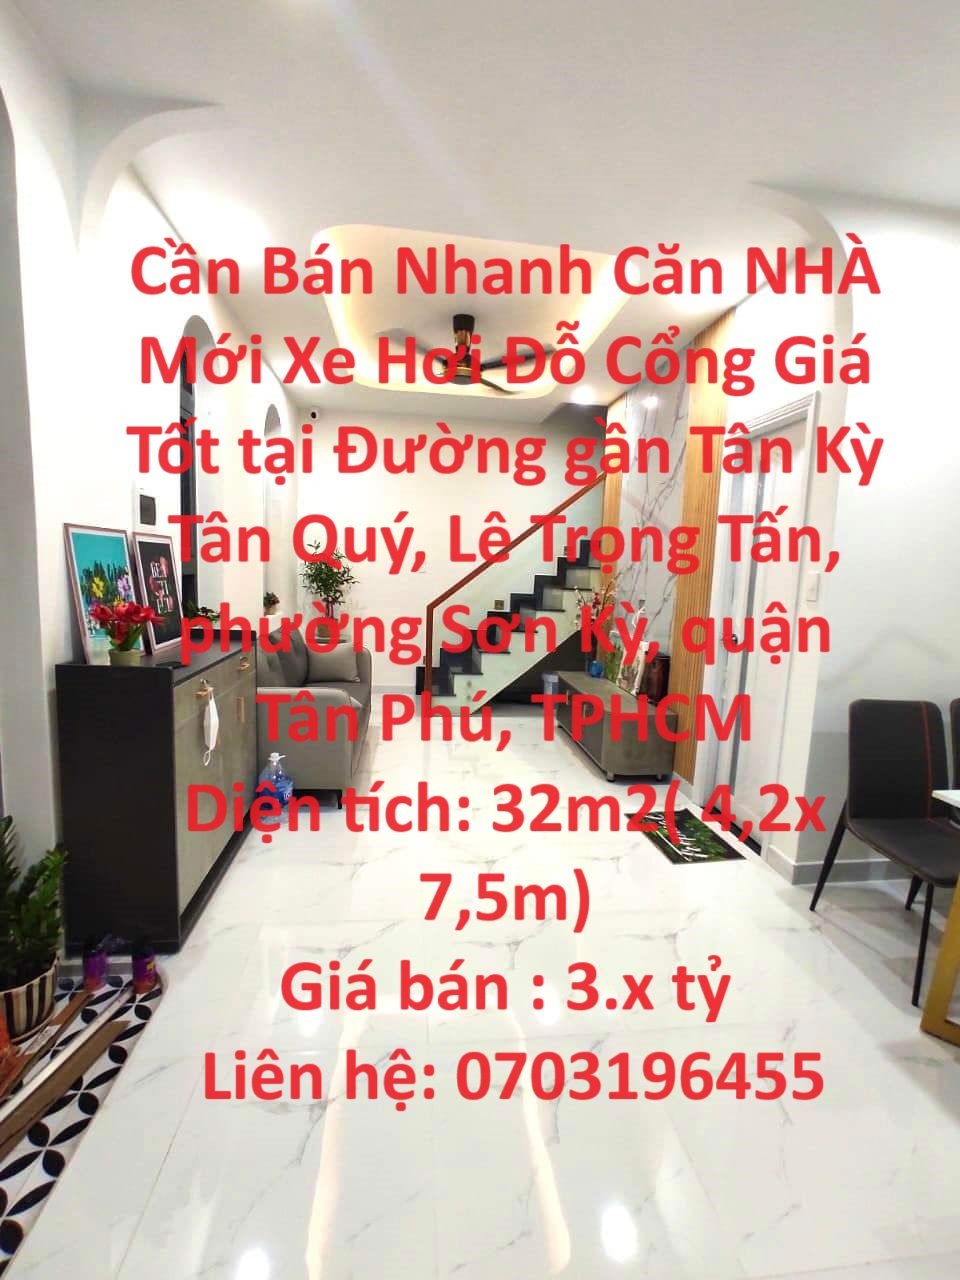 Cần Bán Nhanh Căn NHÀ Mới Xe Hơi Đỗ Cổng Giá Tốt tại quận Tân Phú , TPHCM